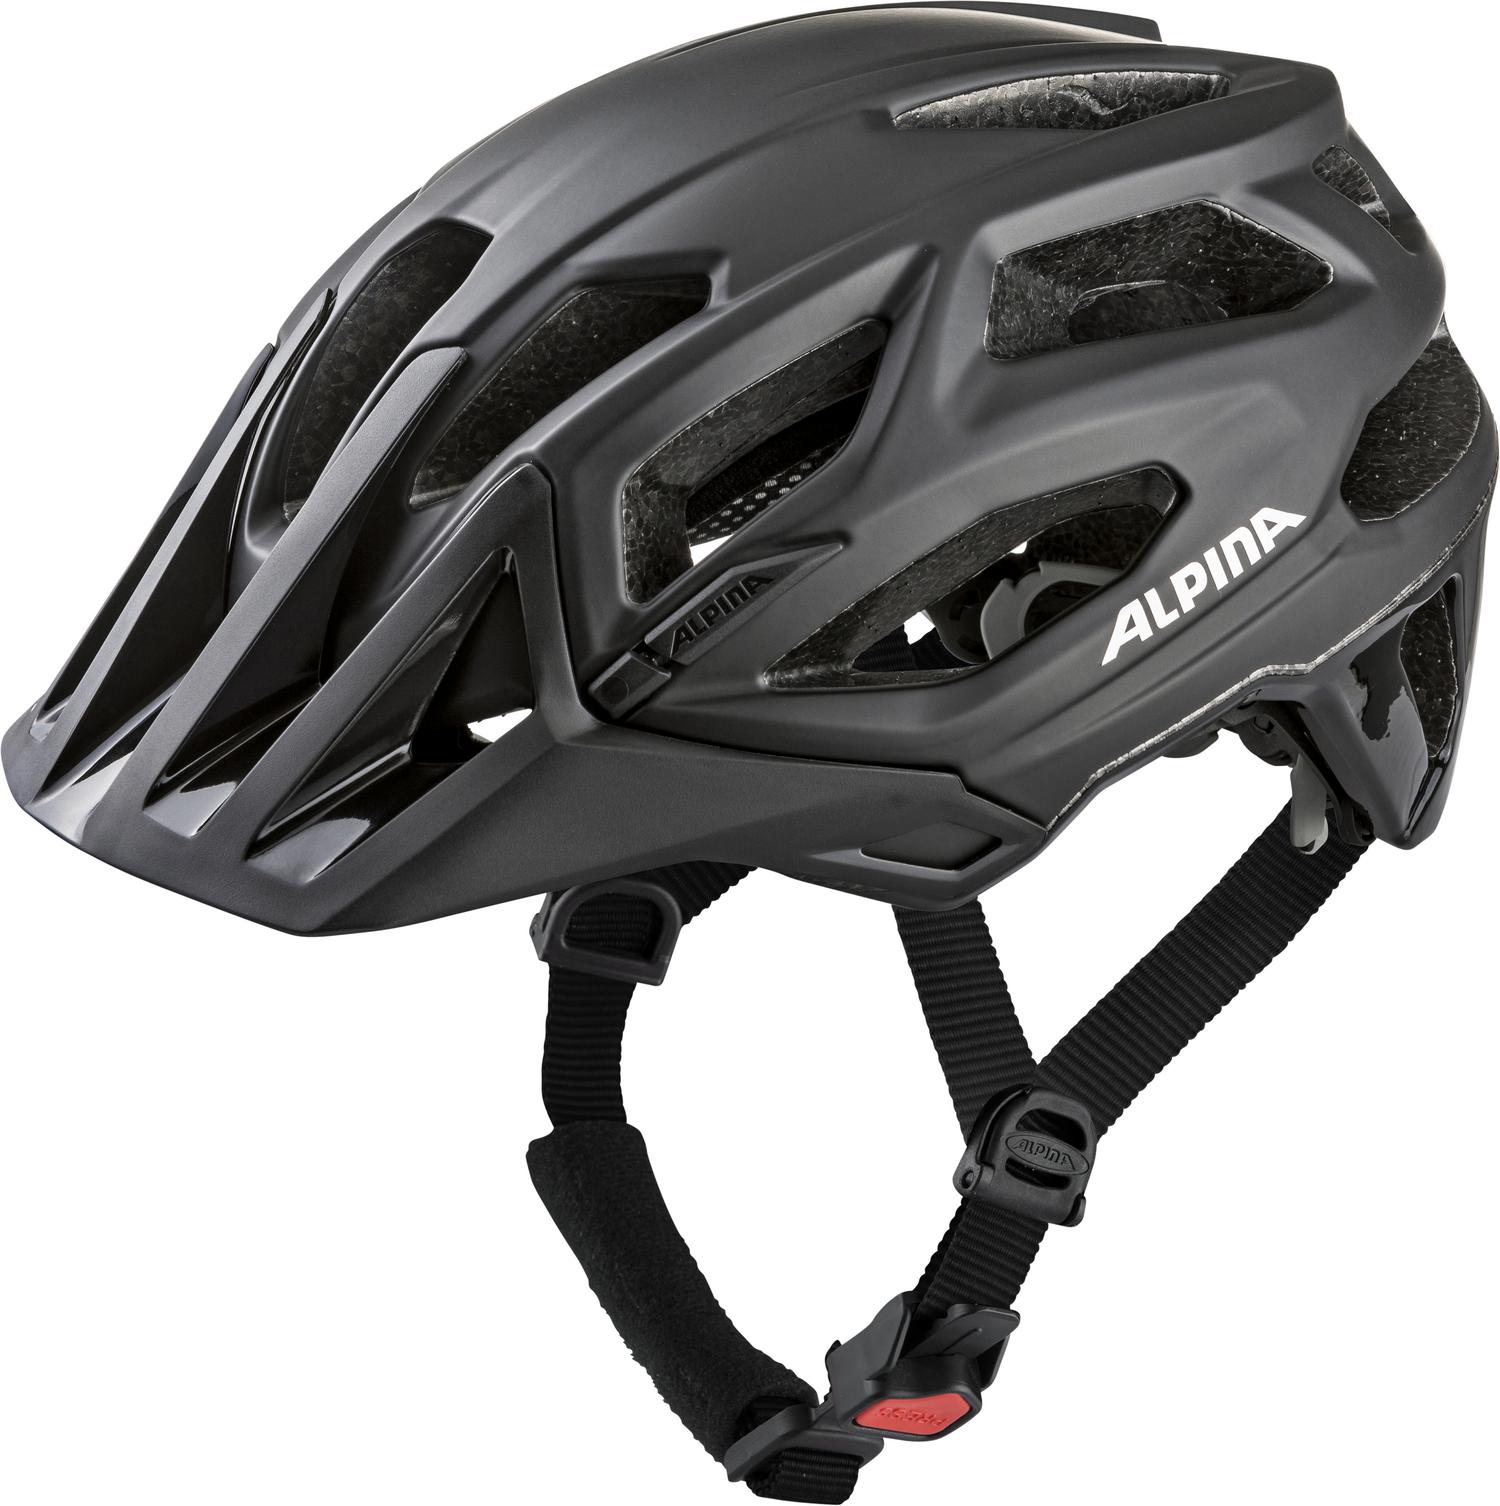 Велосипедный шлем Alpina Garbanzo, black matt, L